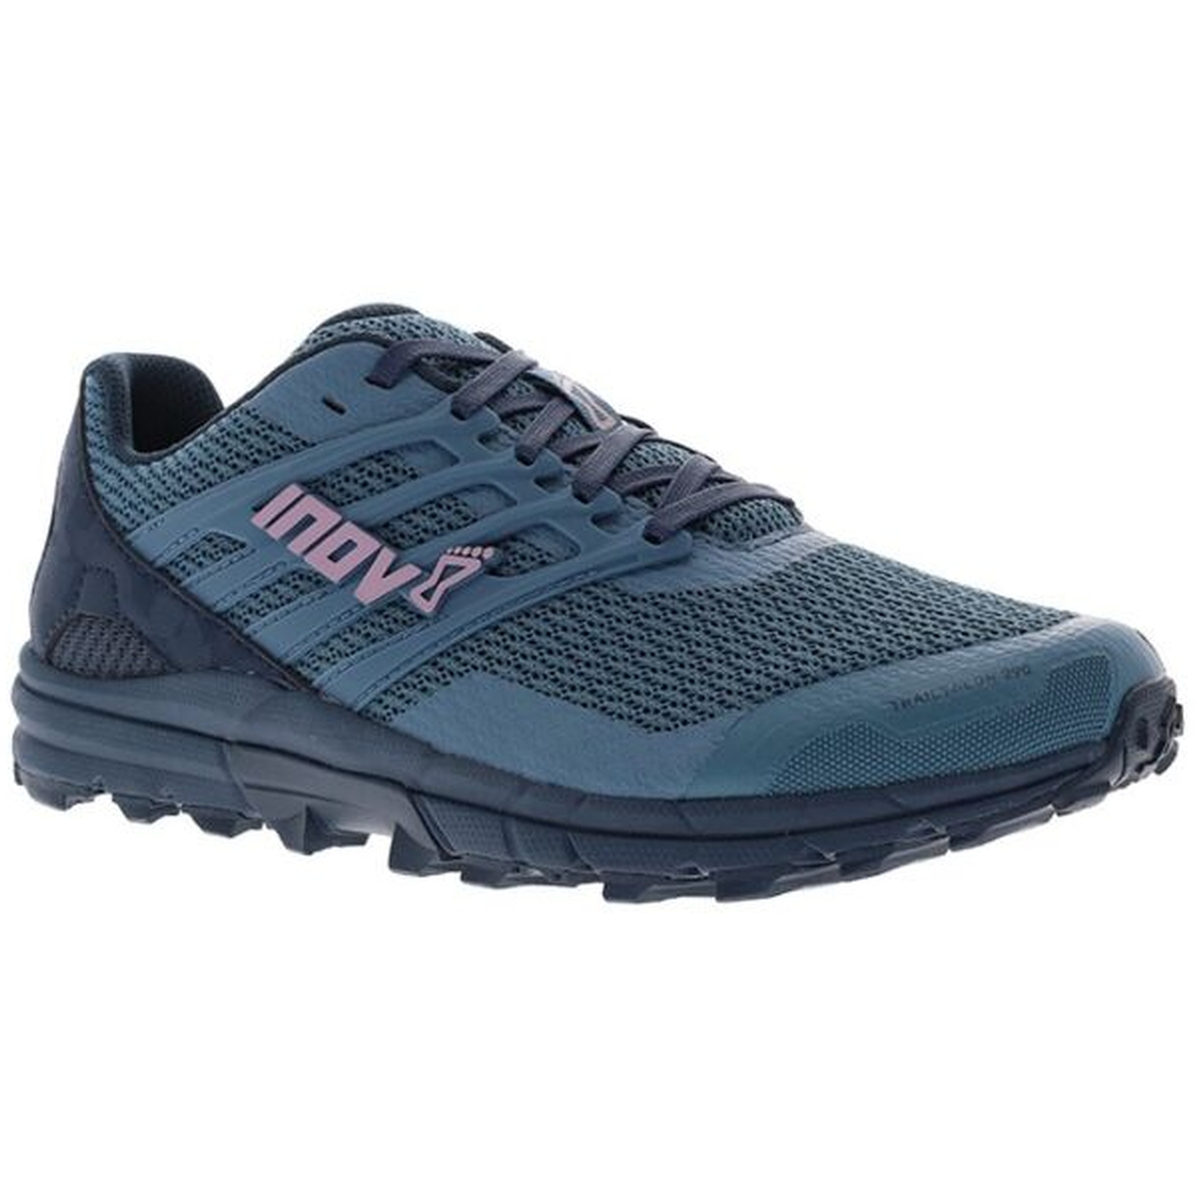 Produktbild von Inov-8 Trailtalon 290 V2 Damen Trailrunning Schuhe - blau/navy/pink